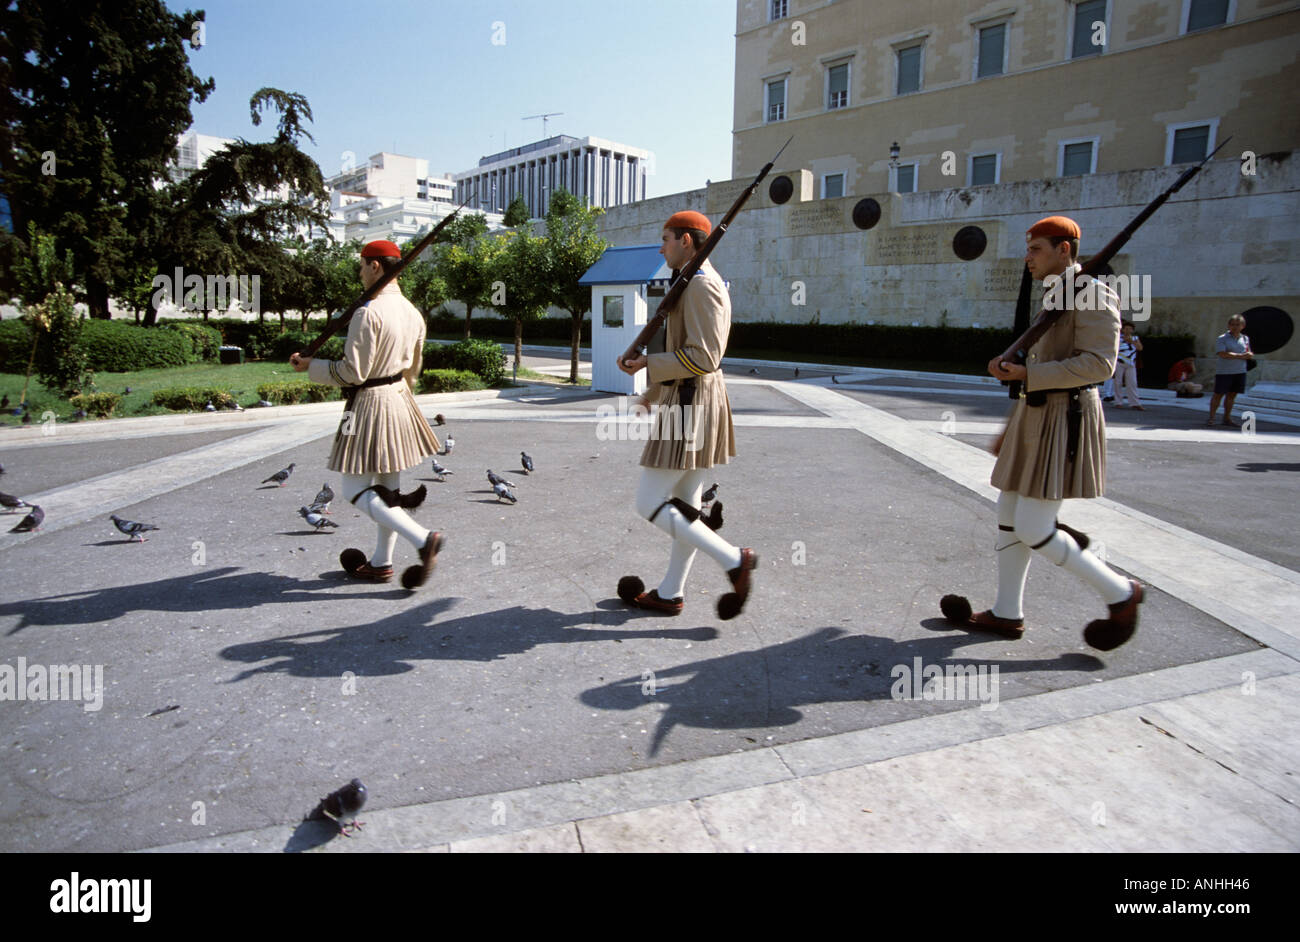 Griechische Soldaten in traditioneller Kleidung vor dem Grab des unbekannten Soldaten Syntagma Square Athen Griechenland Stockfoto